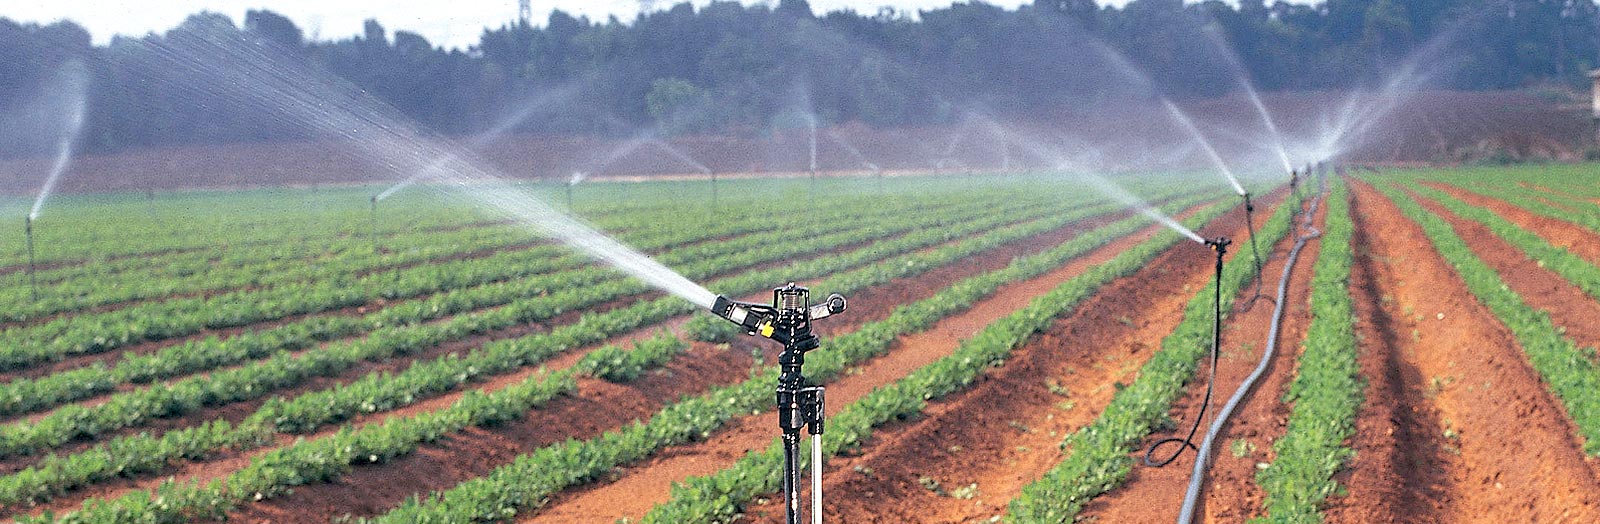 فروش آبپاش تنظیمی بارانی ویر کشاورزی